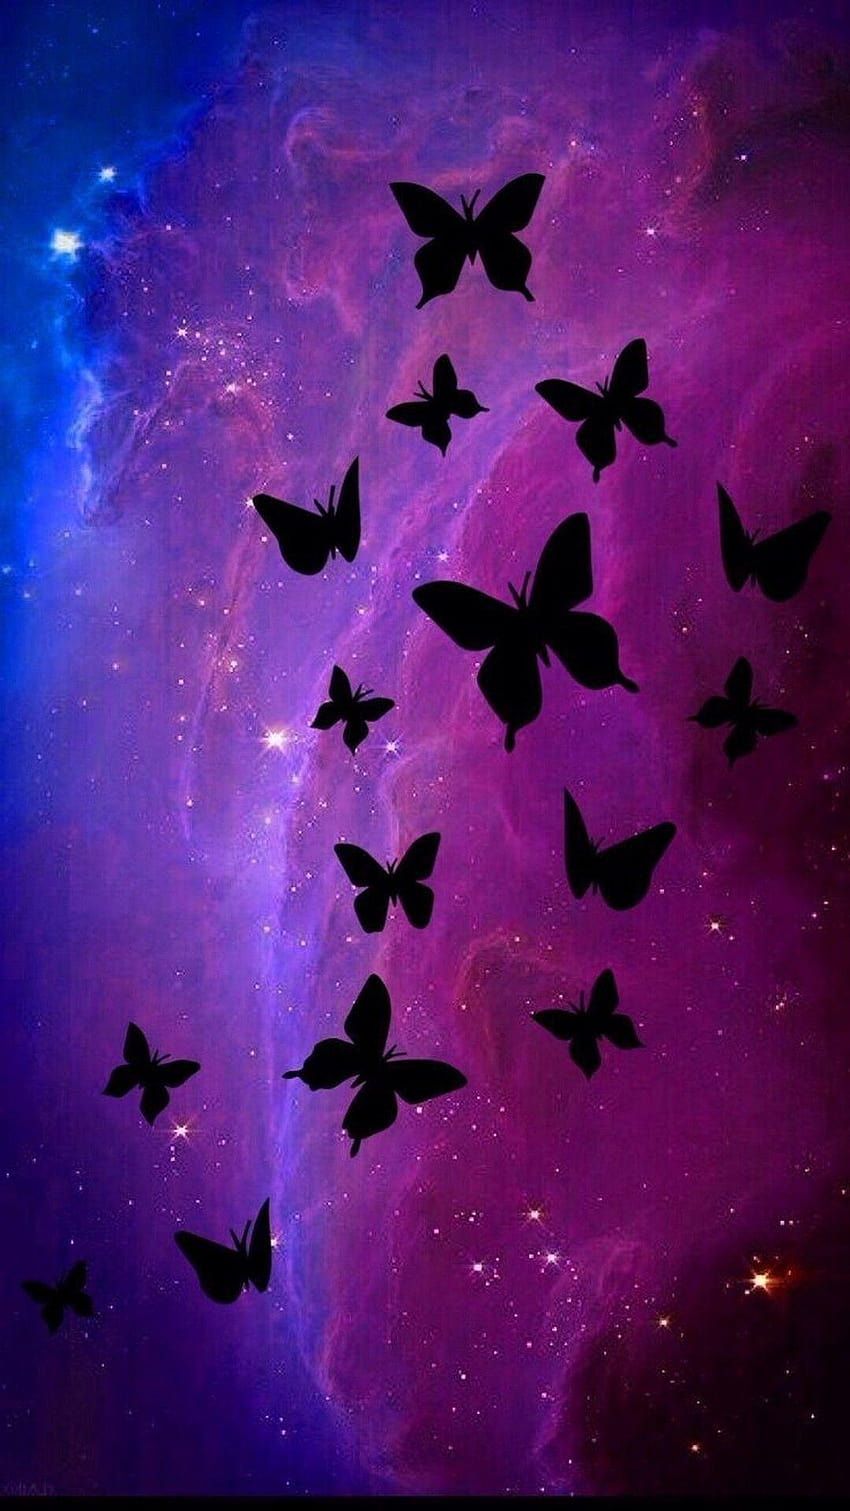 Butterflies in the universe - Butterfly